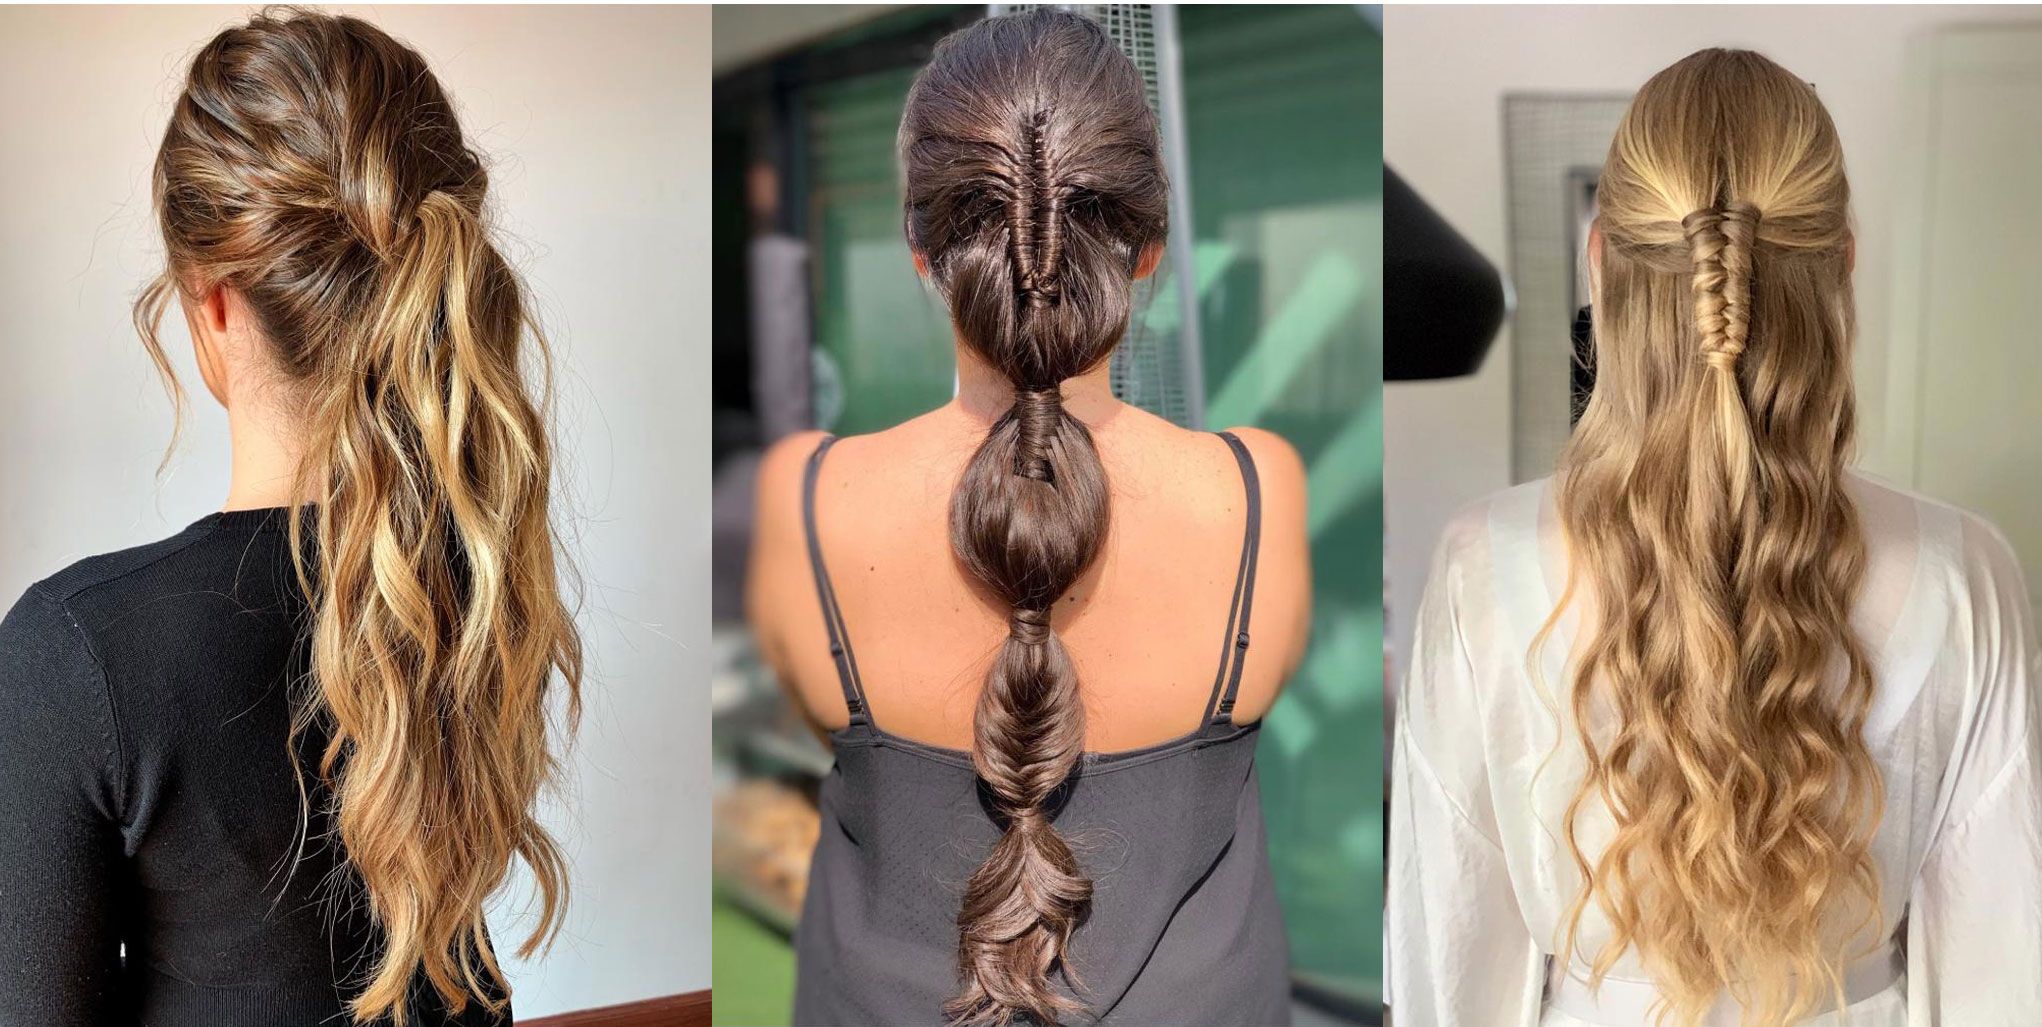 Peinados Muy Simples Fáciles Y Bonitos Para Niñas  Cute  Easy  Hairstyles For Girls  By Aprendiendo Con Mary  Facebook